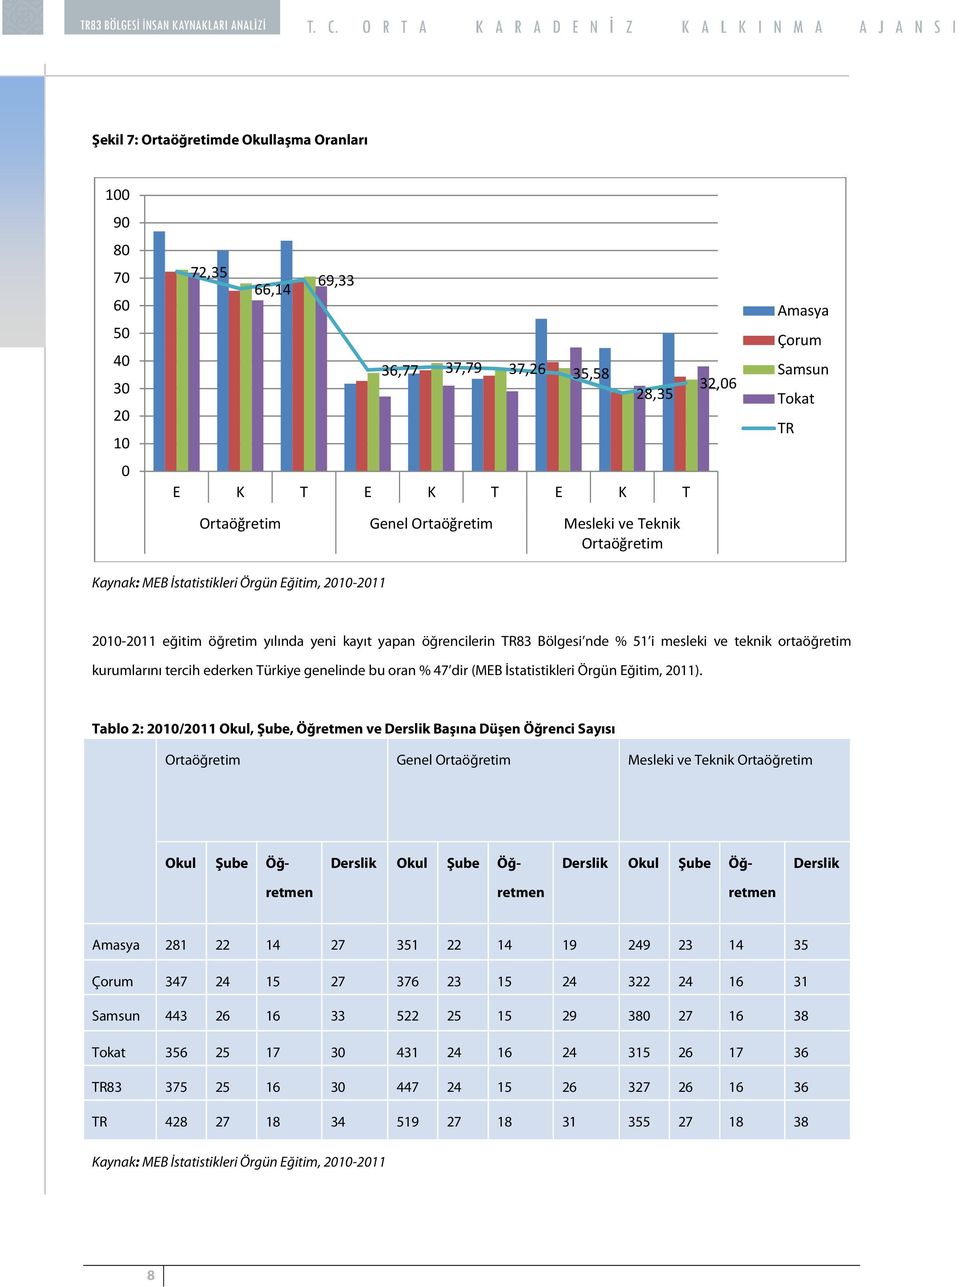 ortaöğretim kurumlarını tercih ederken Türkiye genelinde bu oran % 47 dir (MEB İstatistikleri Örgün Eğitim, 2011).